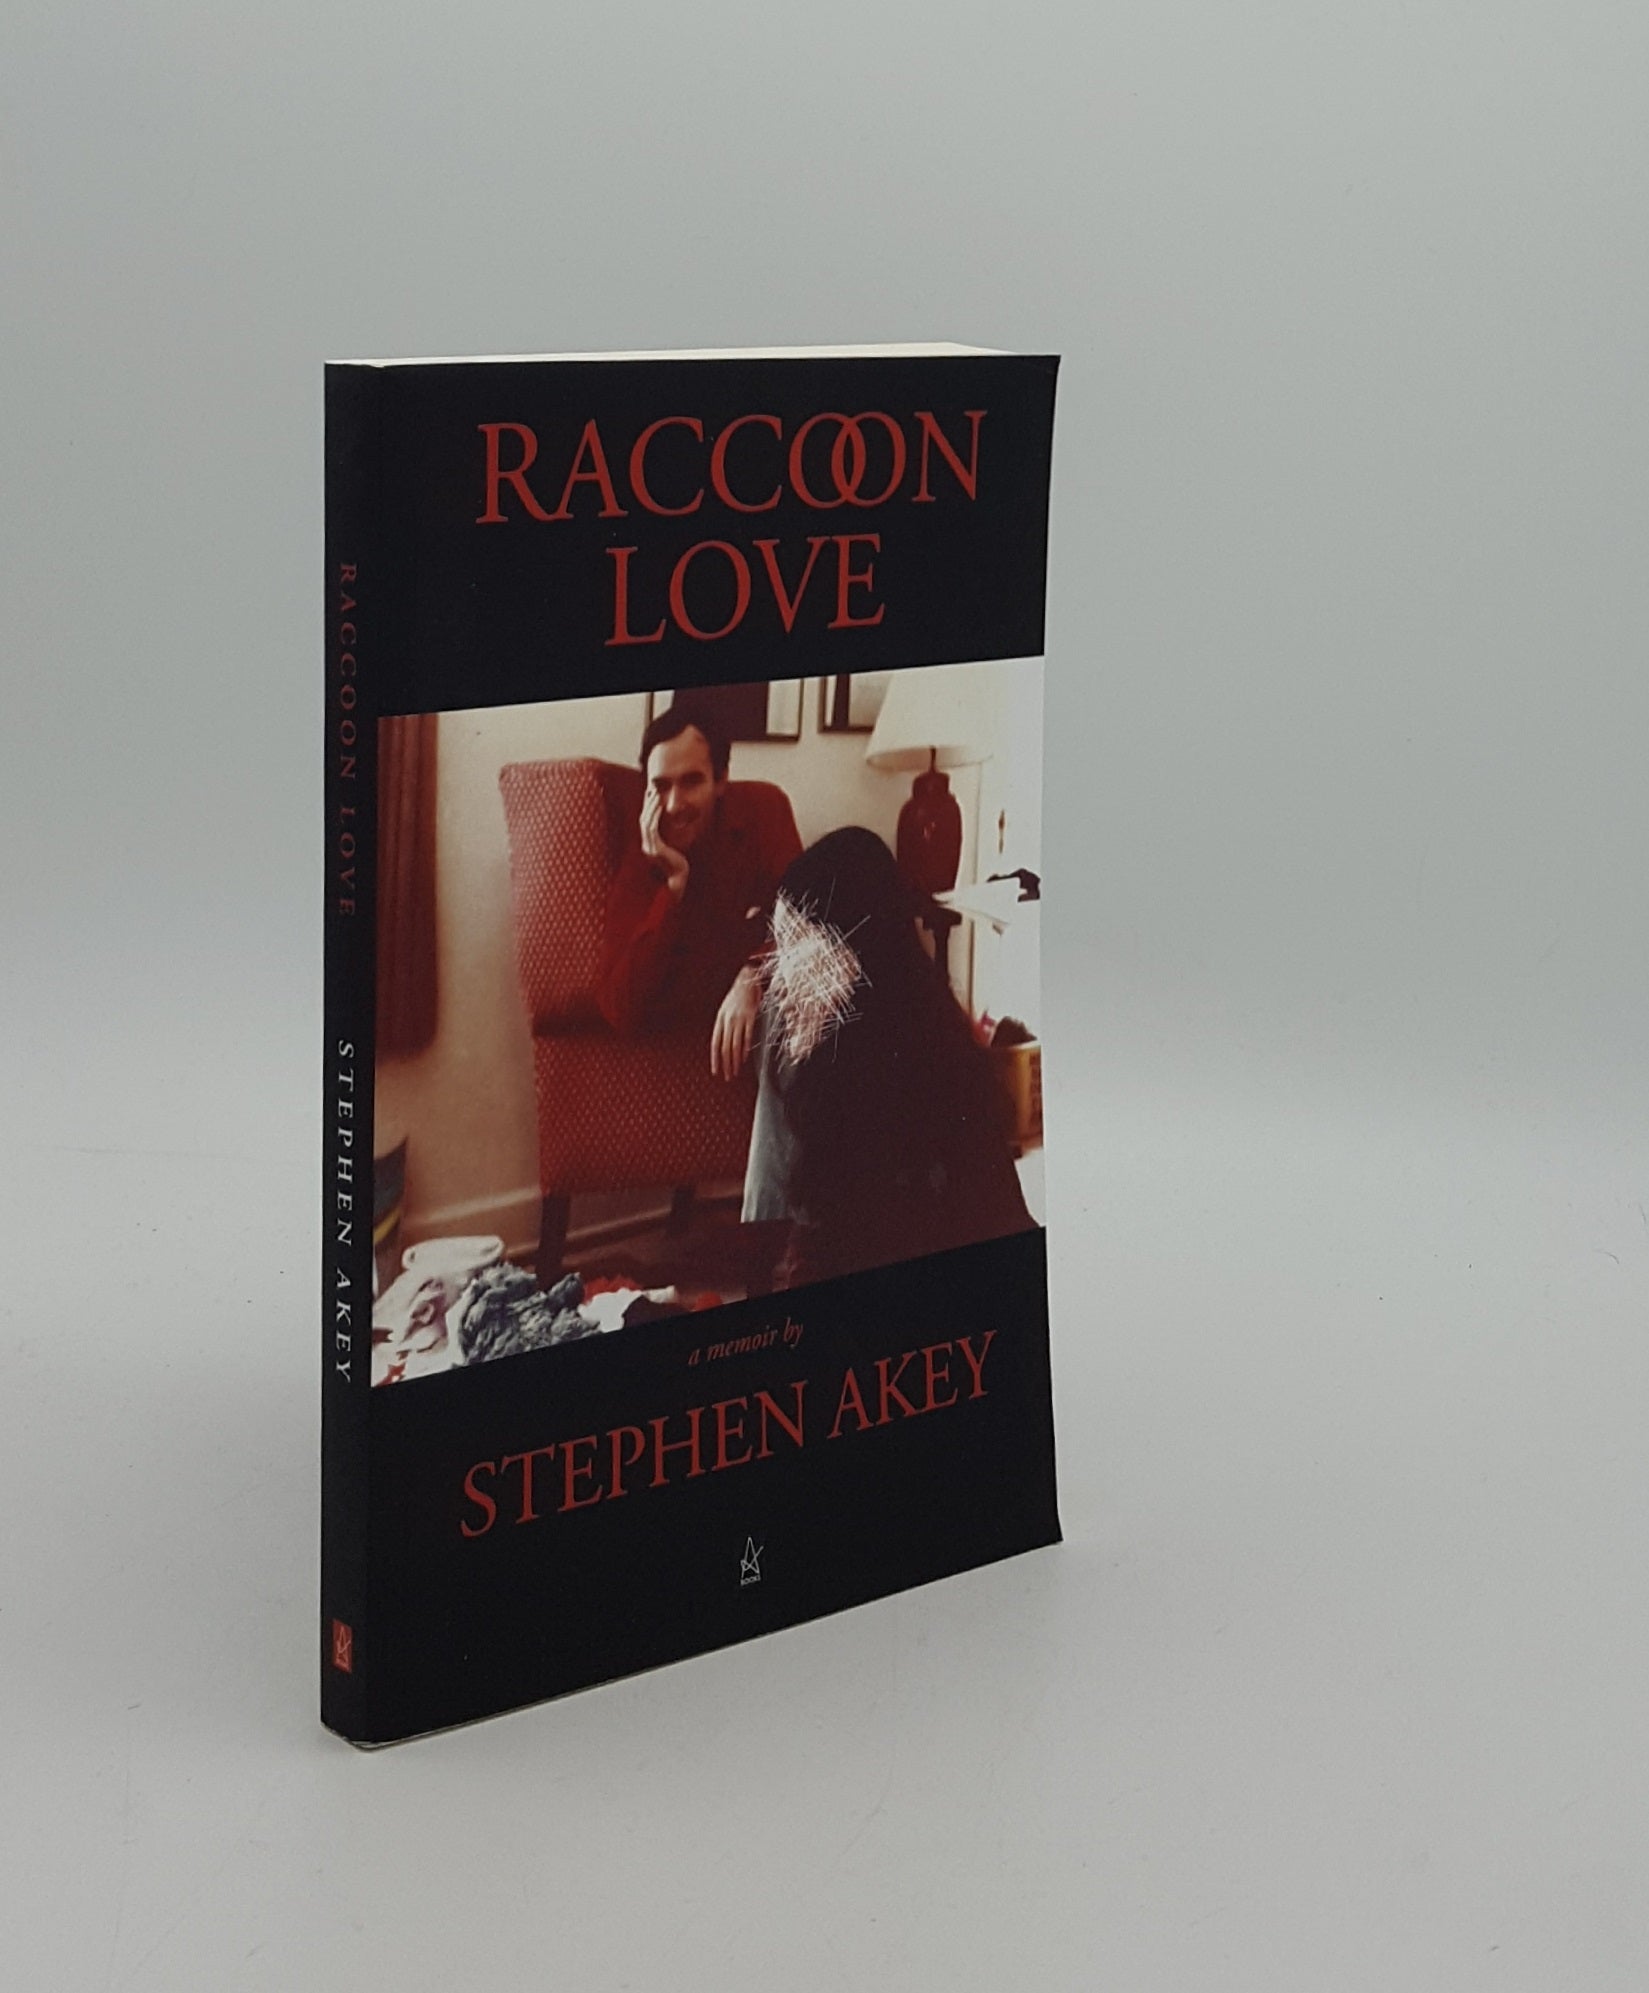 AKEY Stephen - Raccoon Love a Memoir